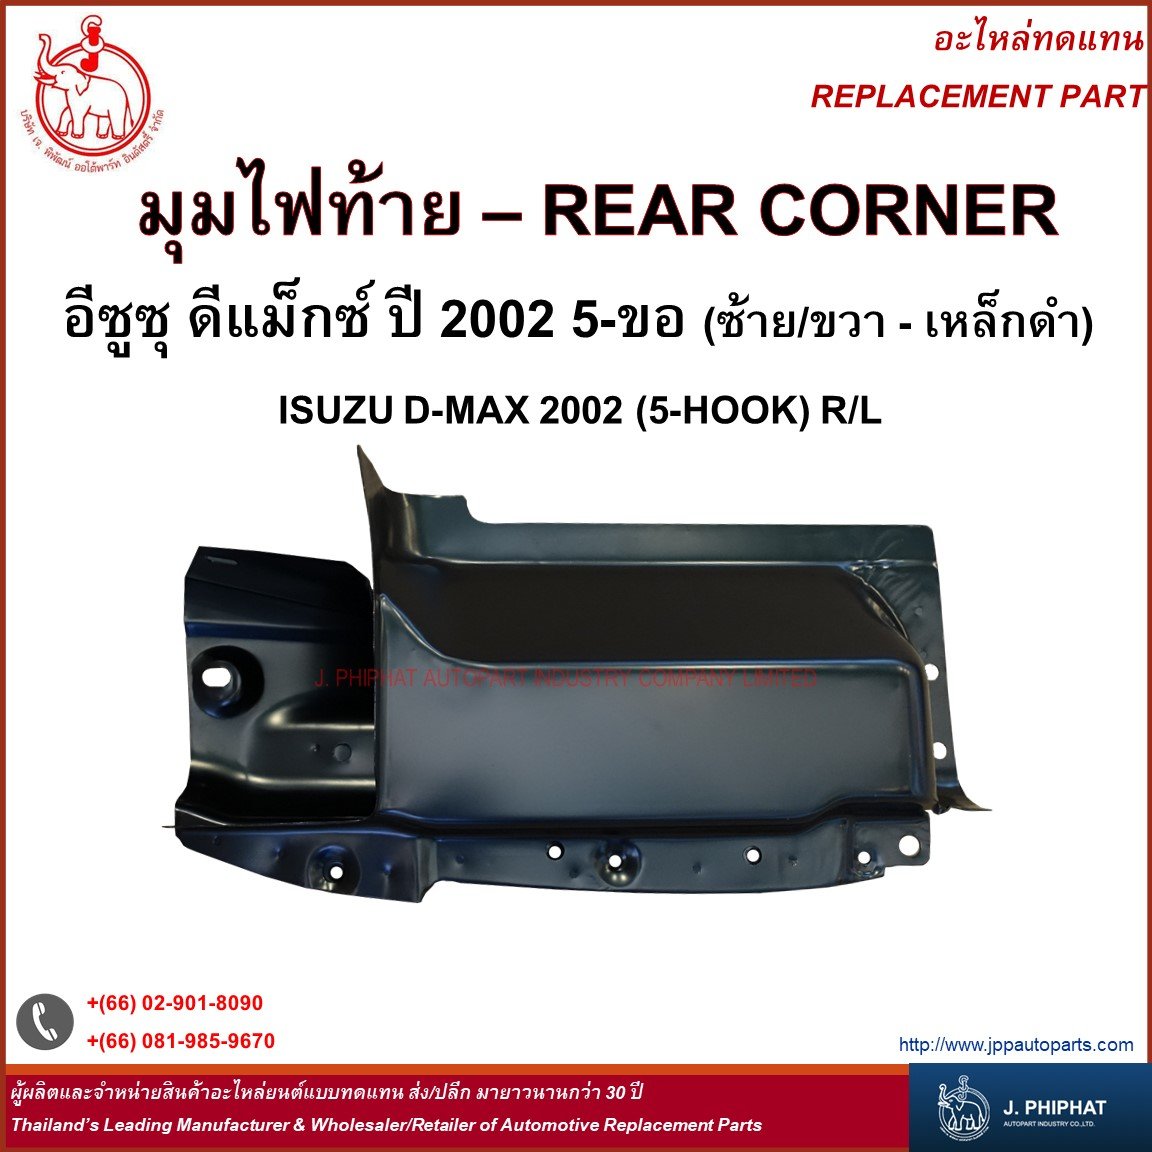 Rear Corner - Isuzu D-Max 2002 (5-Hooks) R/L